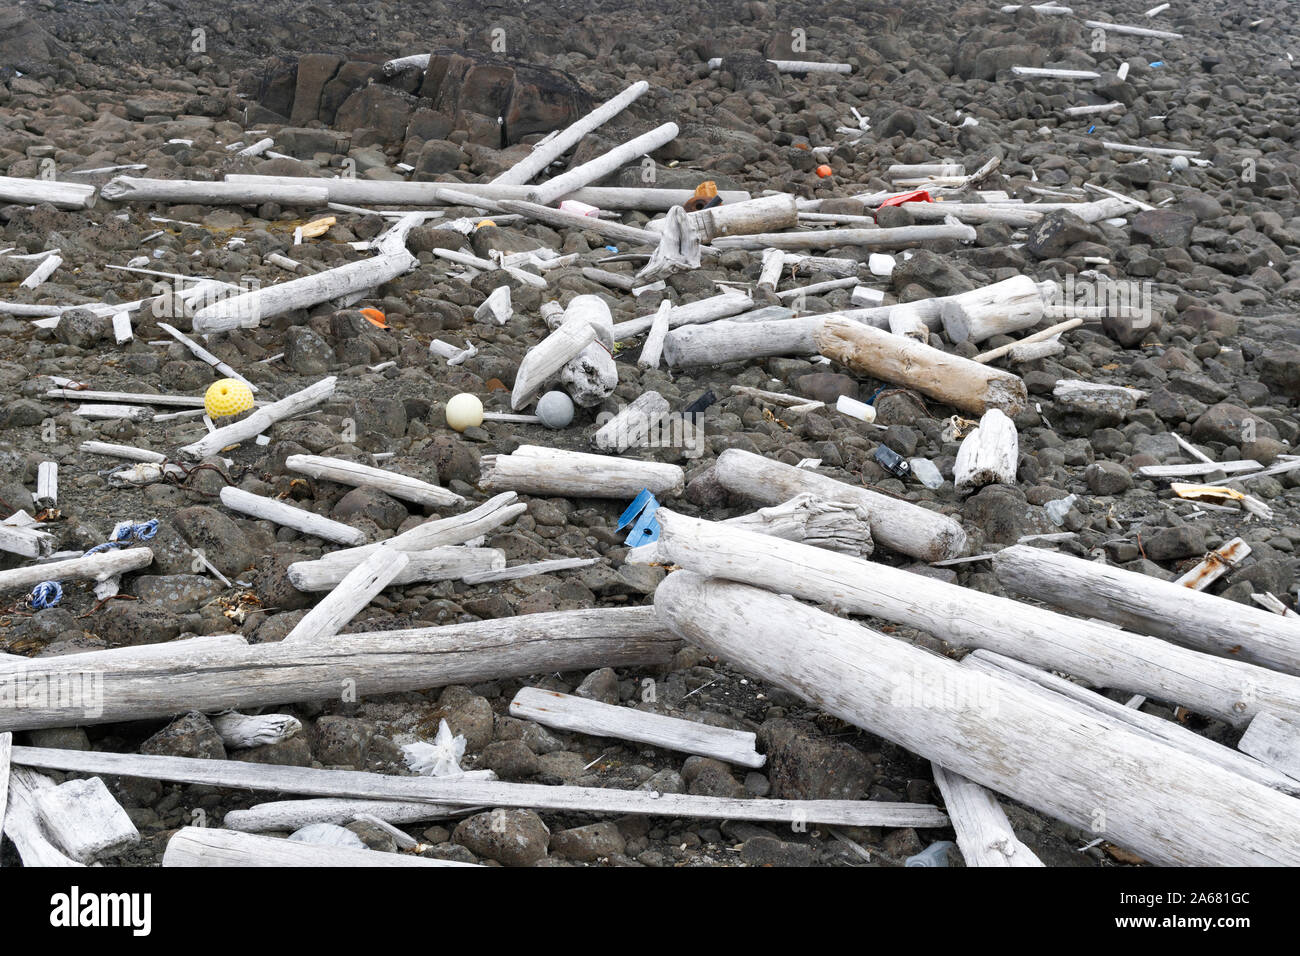 Sauber bis Spitzbergen Kampagne der Sysselmannen. Müll auf einem entfernten Strand in der hohen Arktis Agardhbukta, Svalbard, Norwegen überflutet Stockfoto